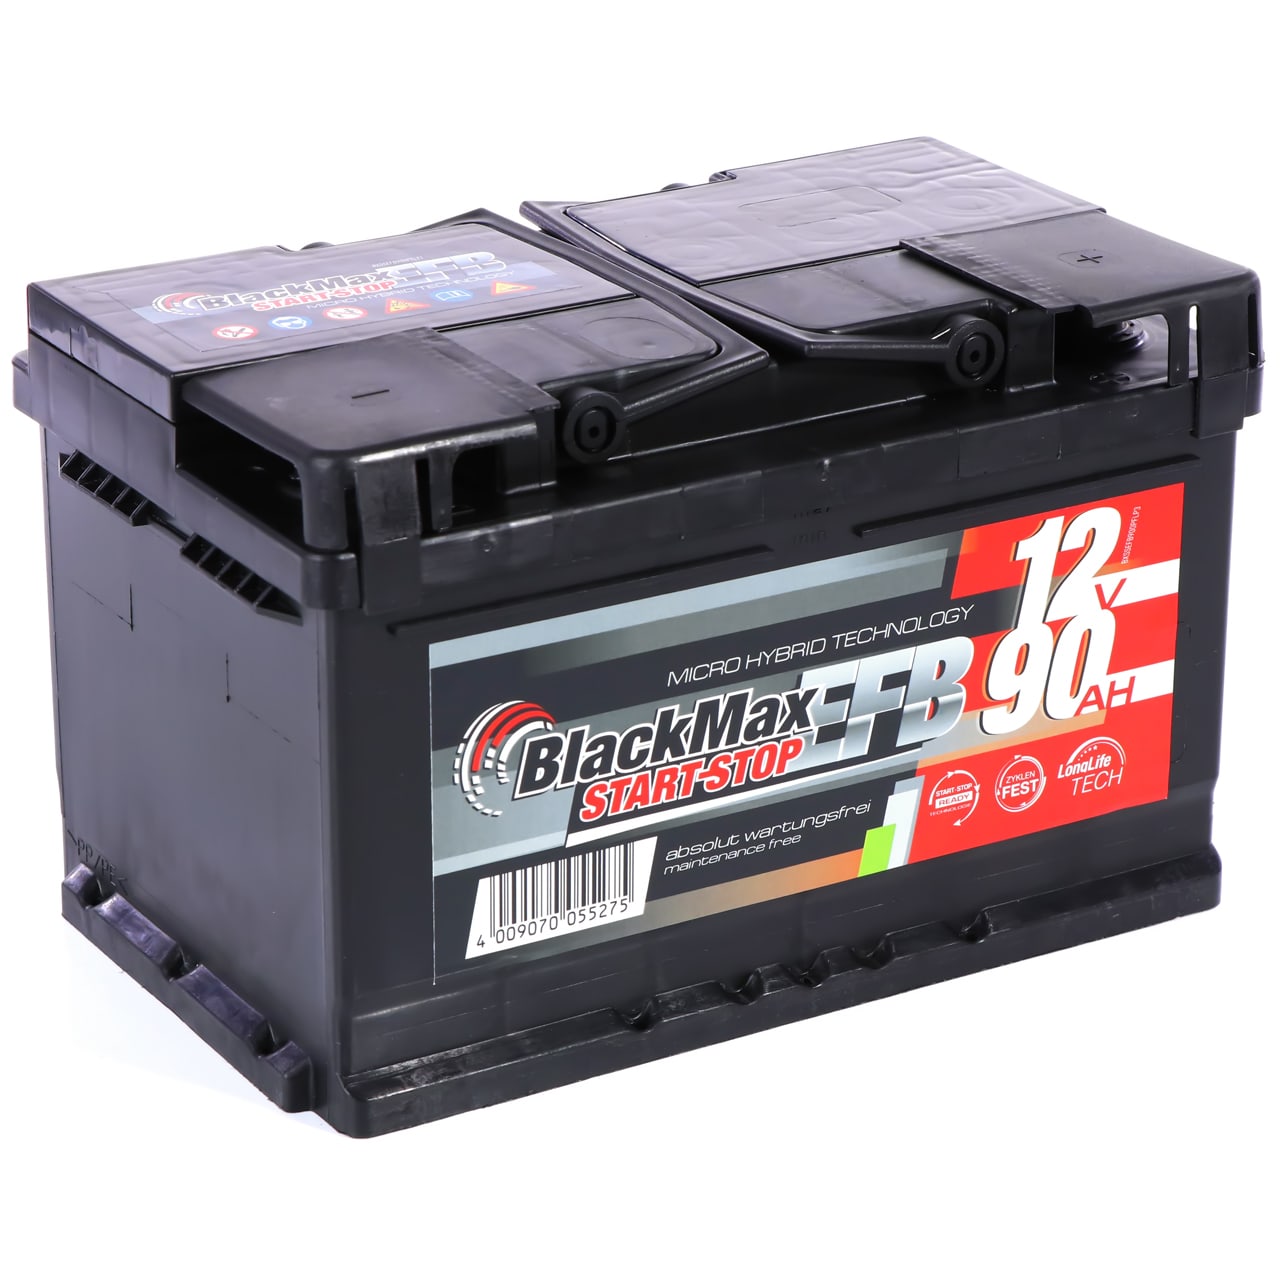 intAct Autobatterie 12V 90Ah 720A, 30% mehr Startleistung